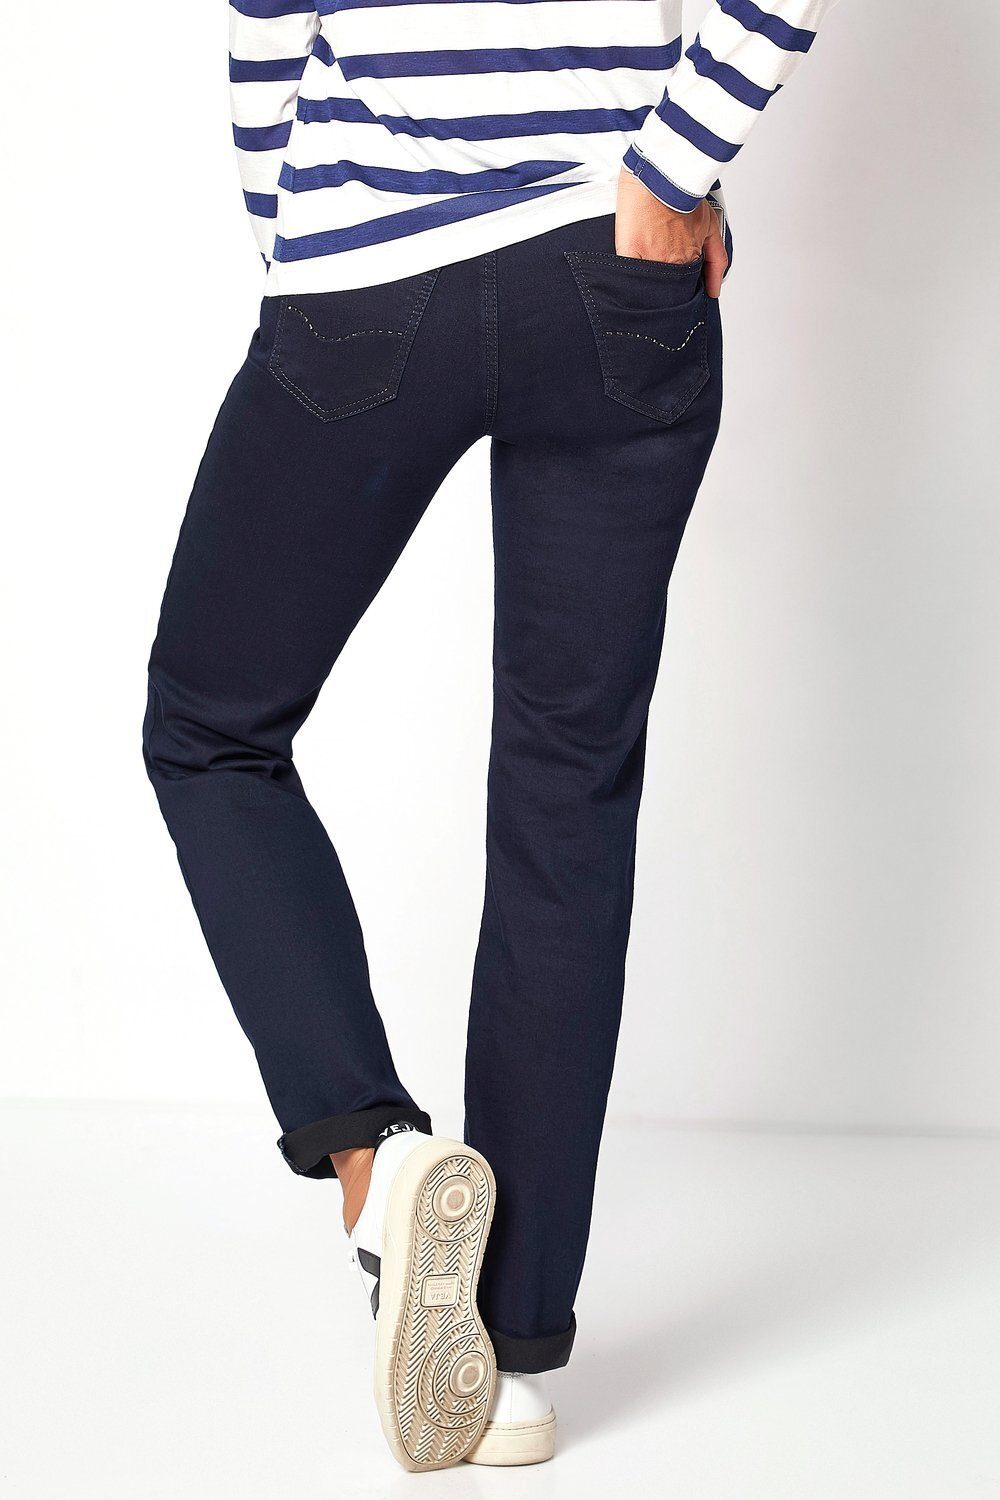 TONI 5-Pocket-Jeans Liv 059 dunkelblau in Regular-Fit 